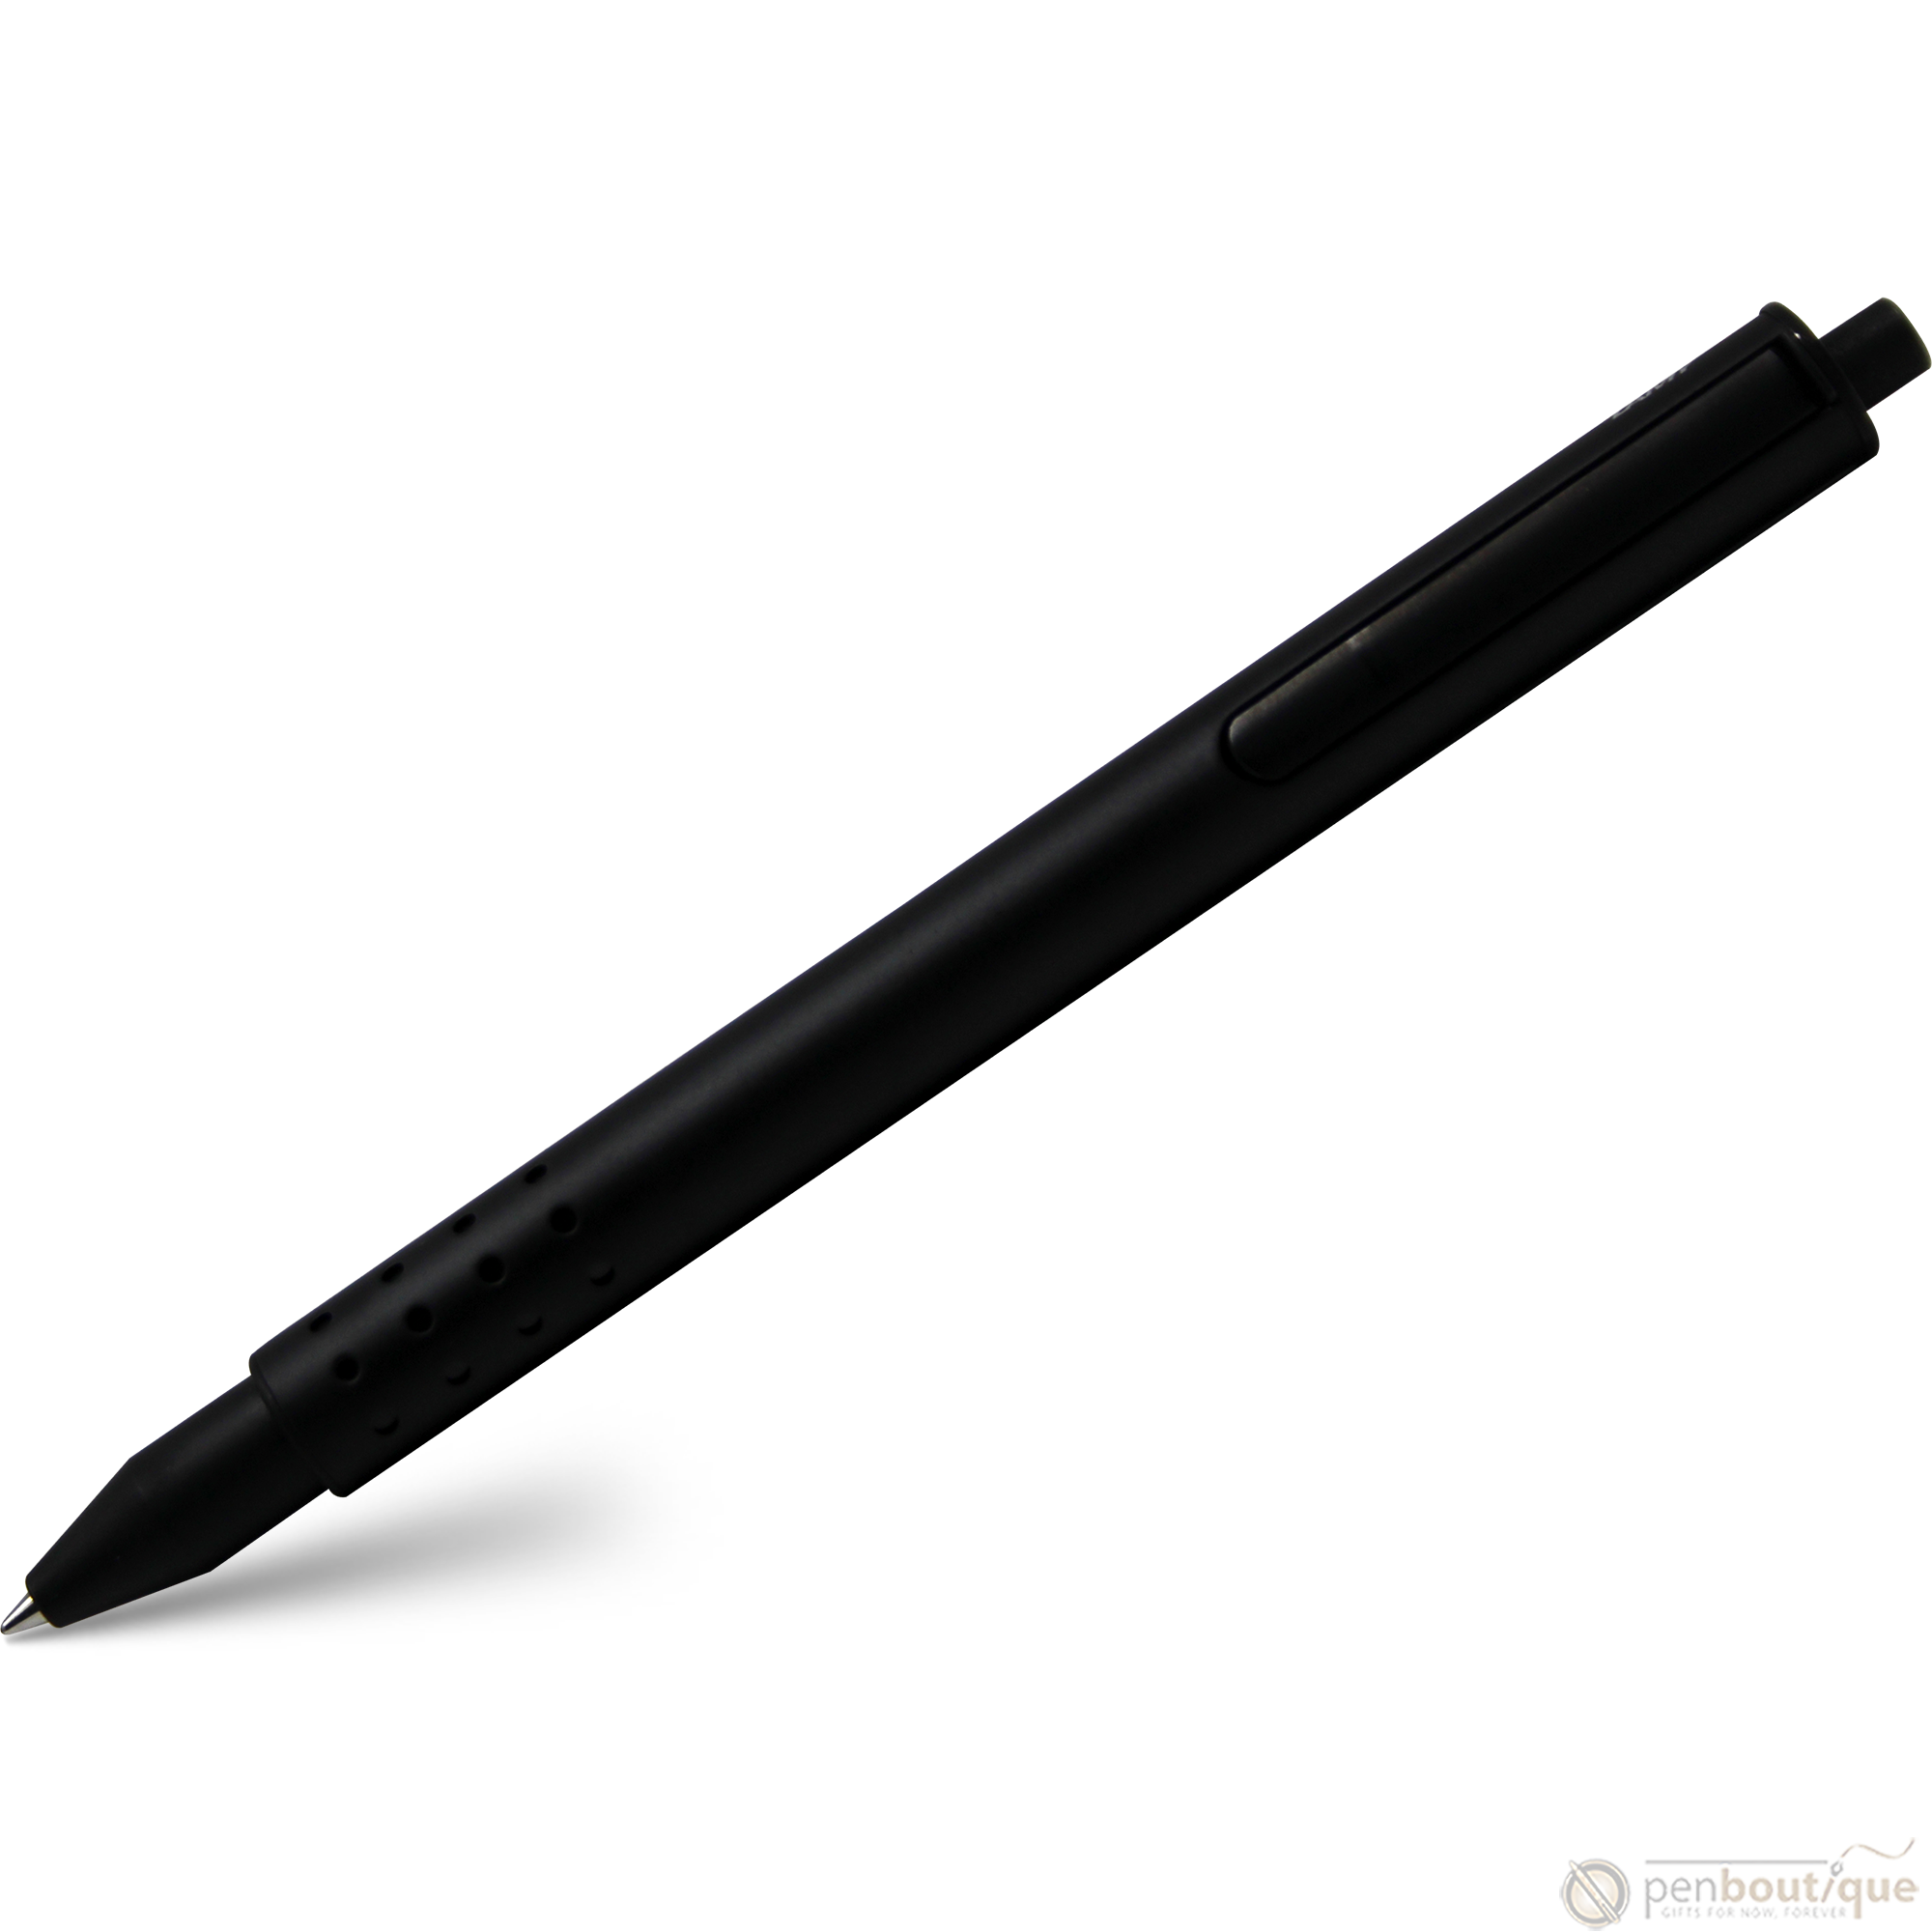 Lamy Swift Black Rollerball Pen-Pen Boutique Ltd